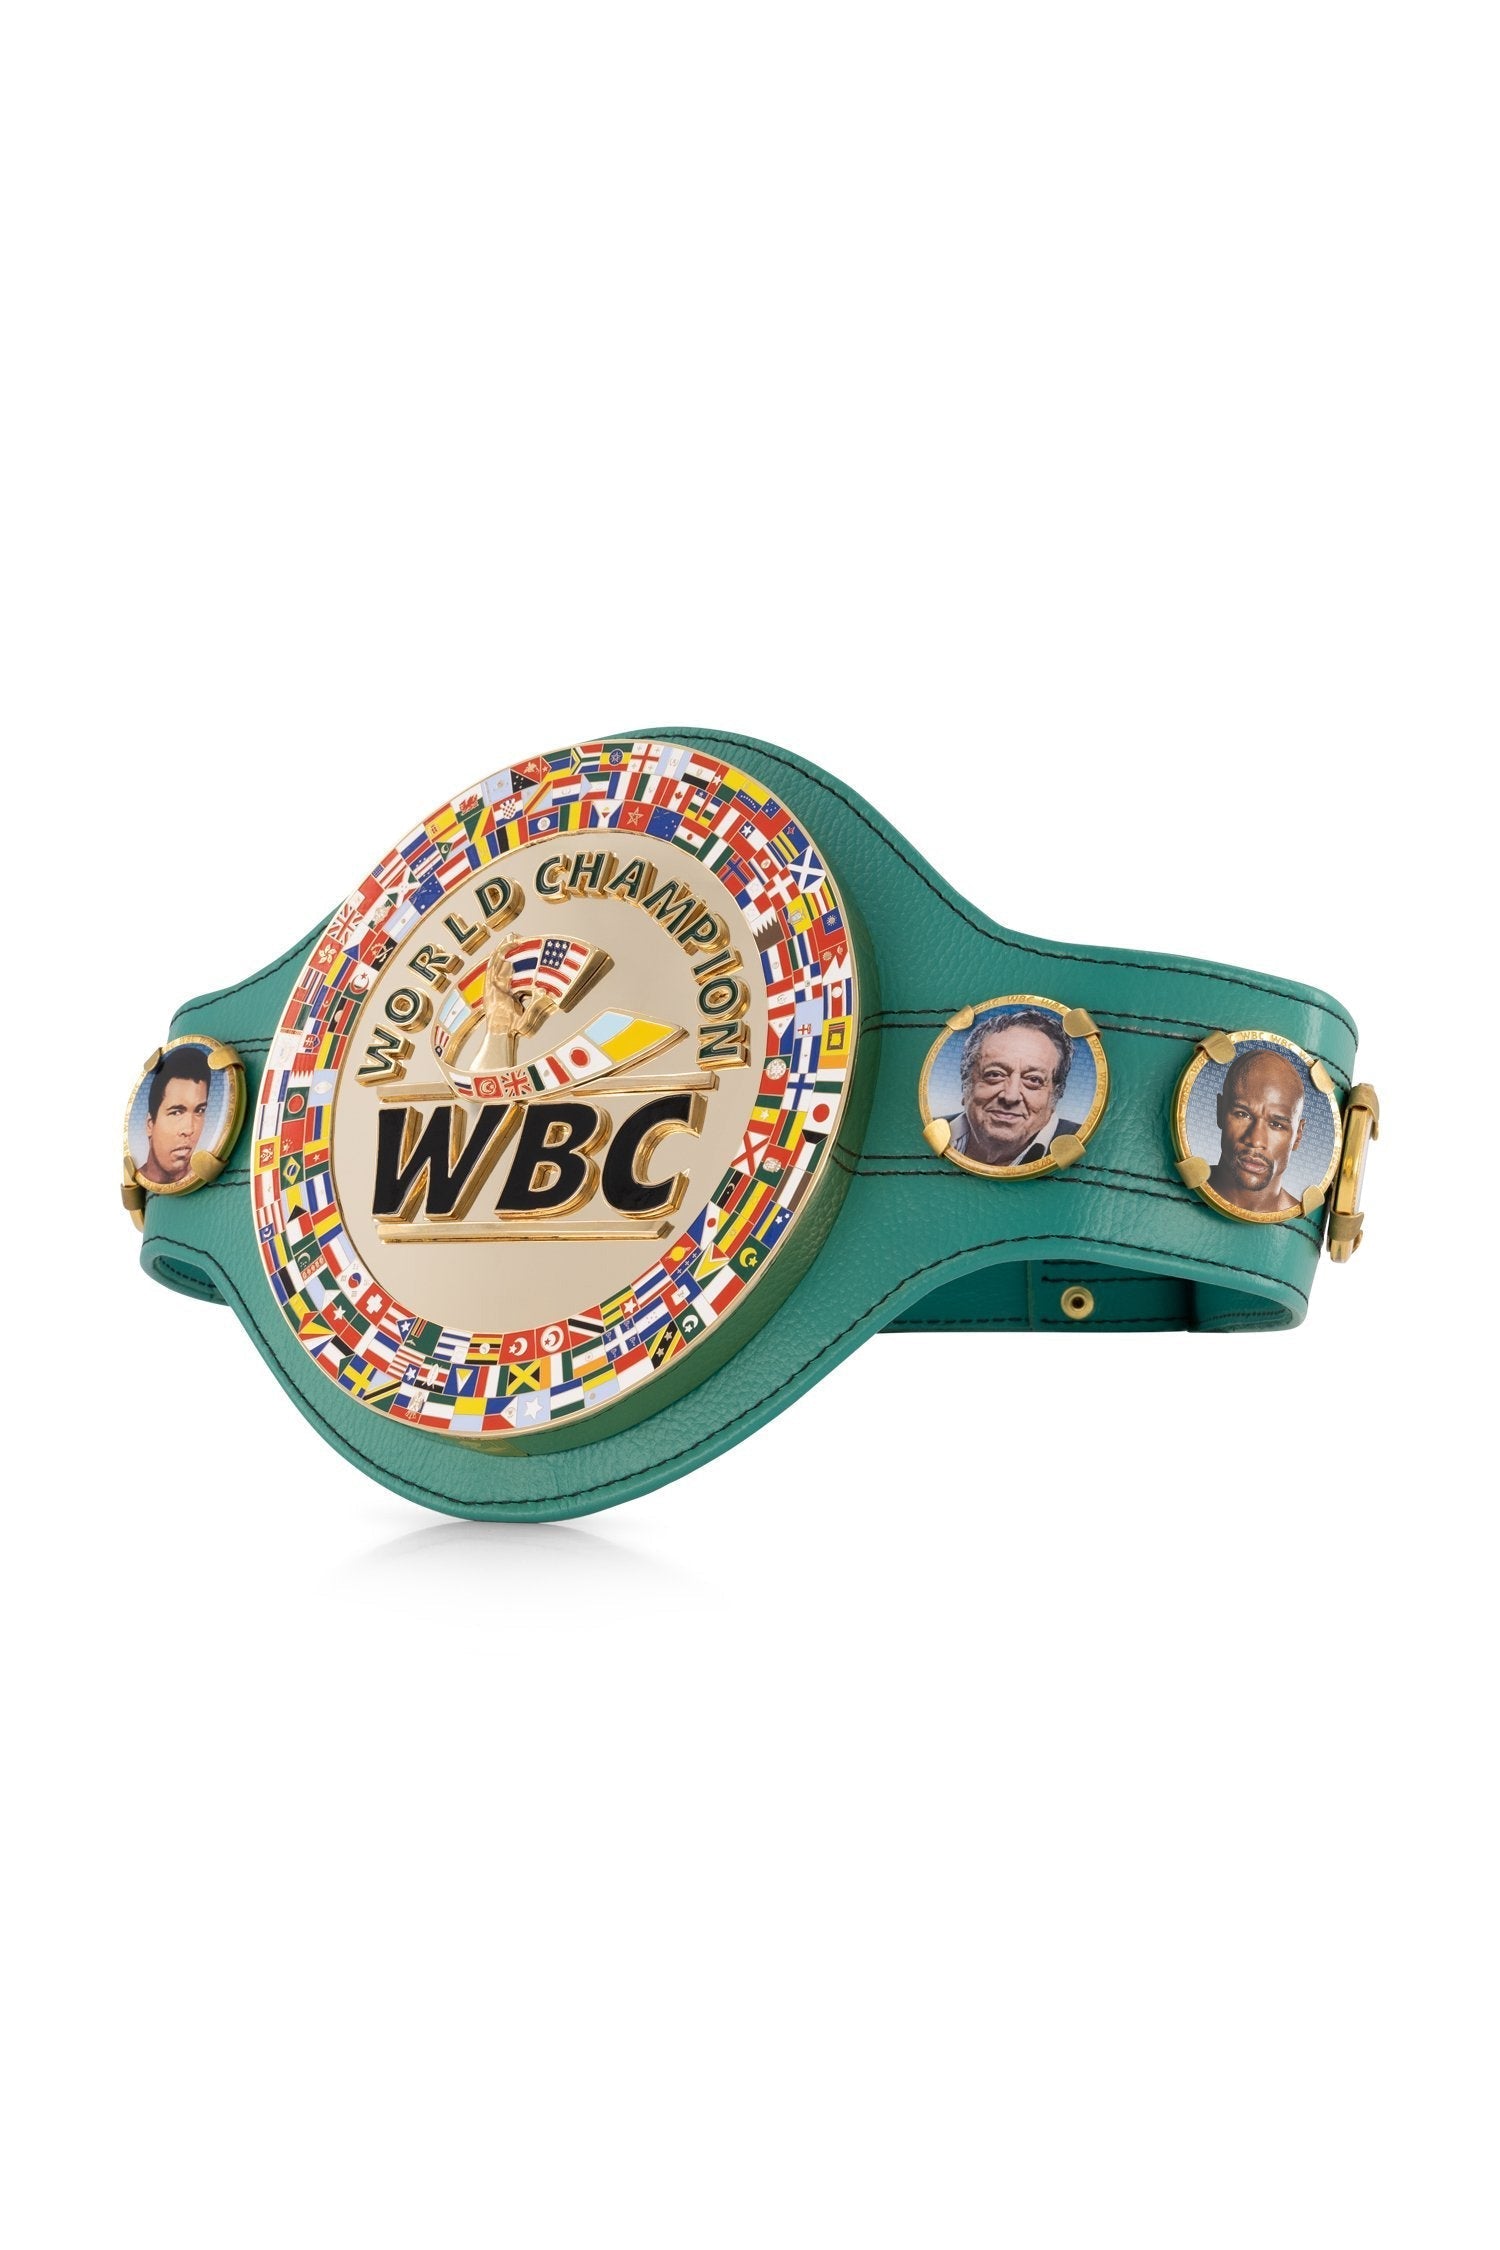 WBC Store Replica Belts WBC Championship Belt  "Historic Fights" Pacquiao vs. Mayweather